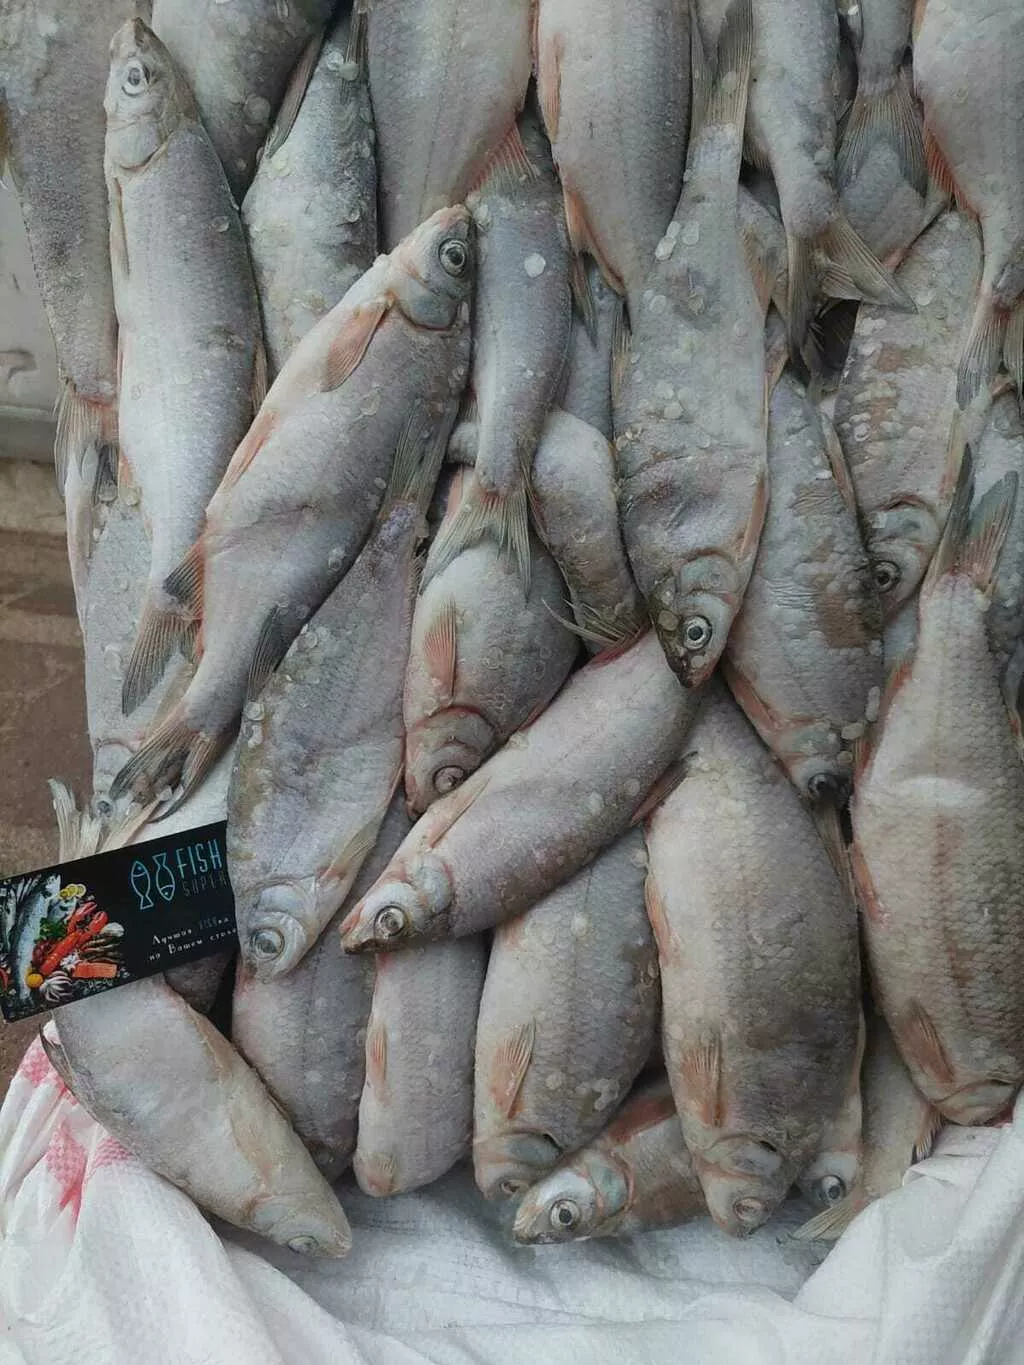 фотография продукта Атыраусский рыбец в рнд и астрахани